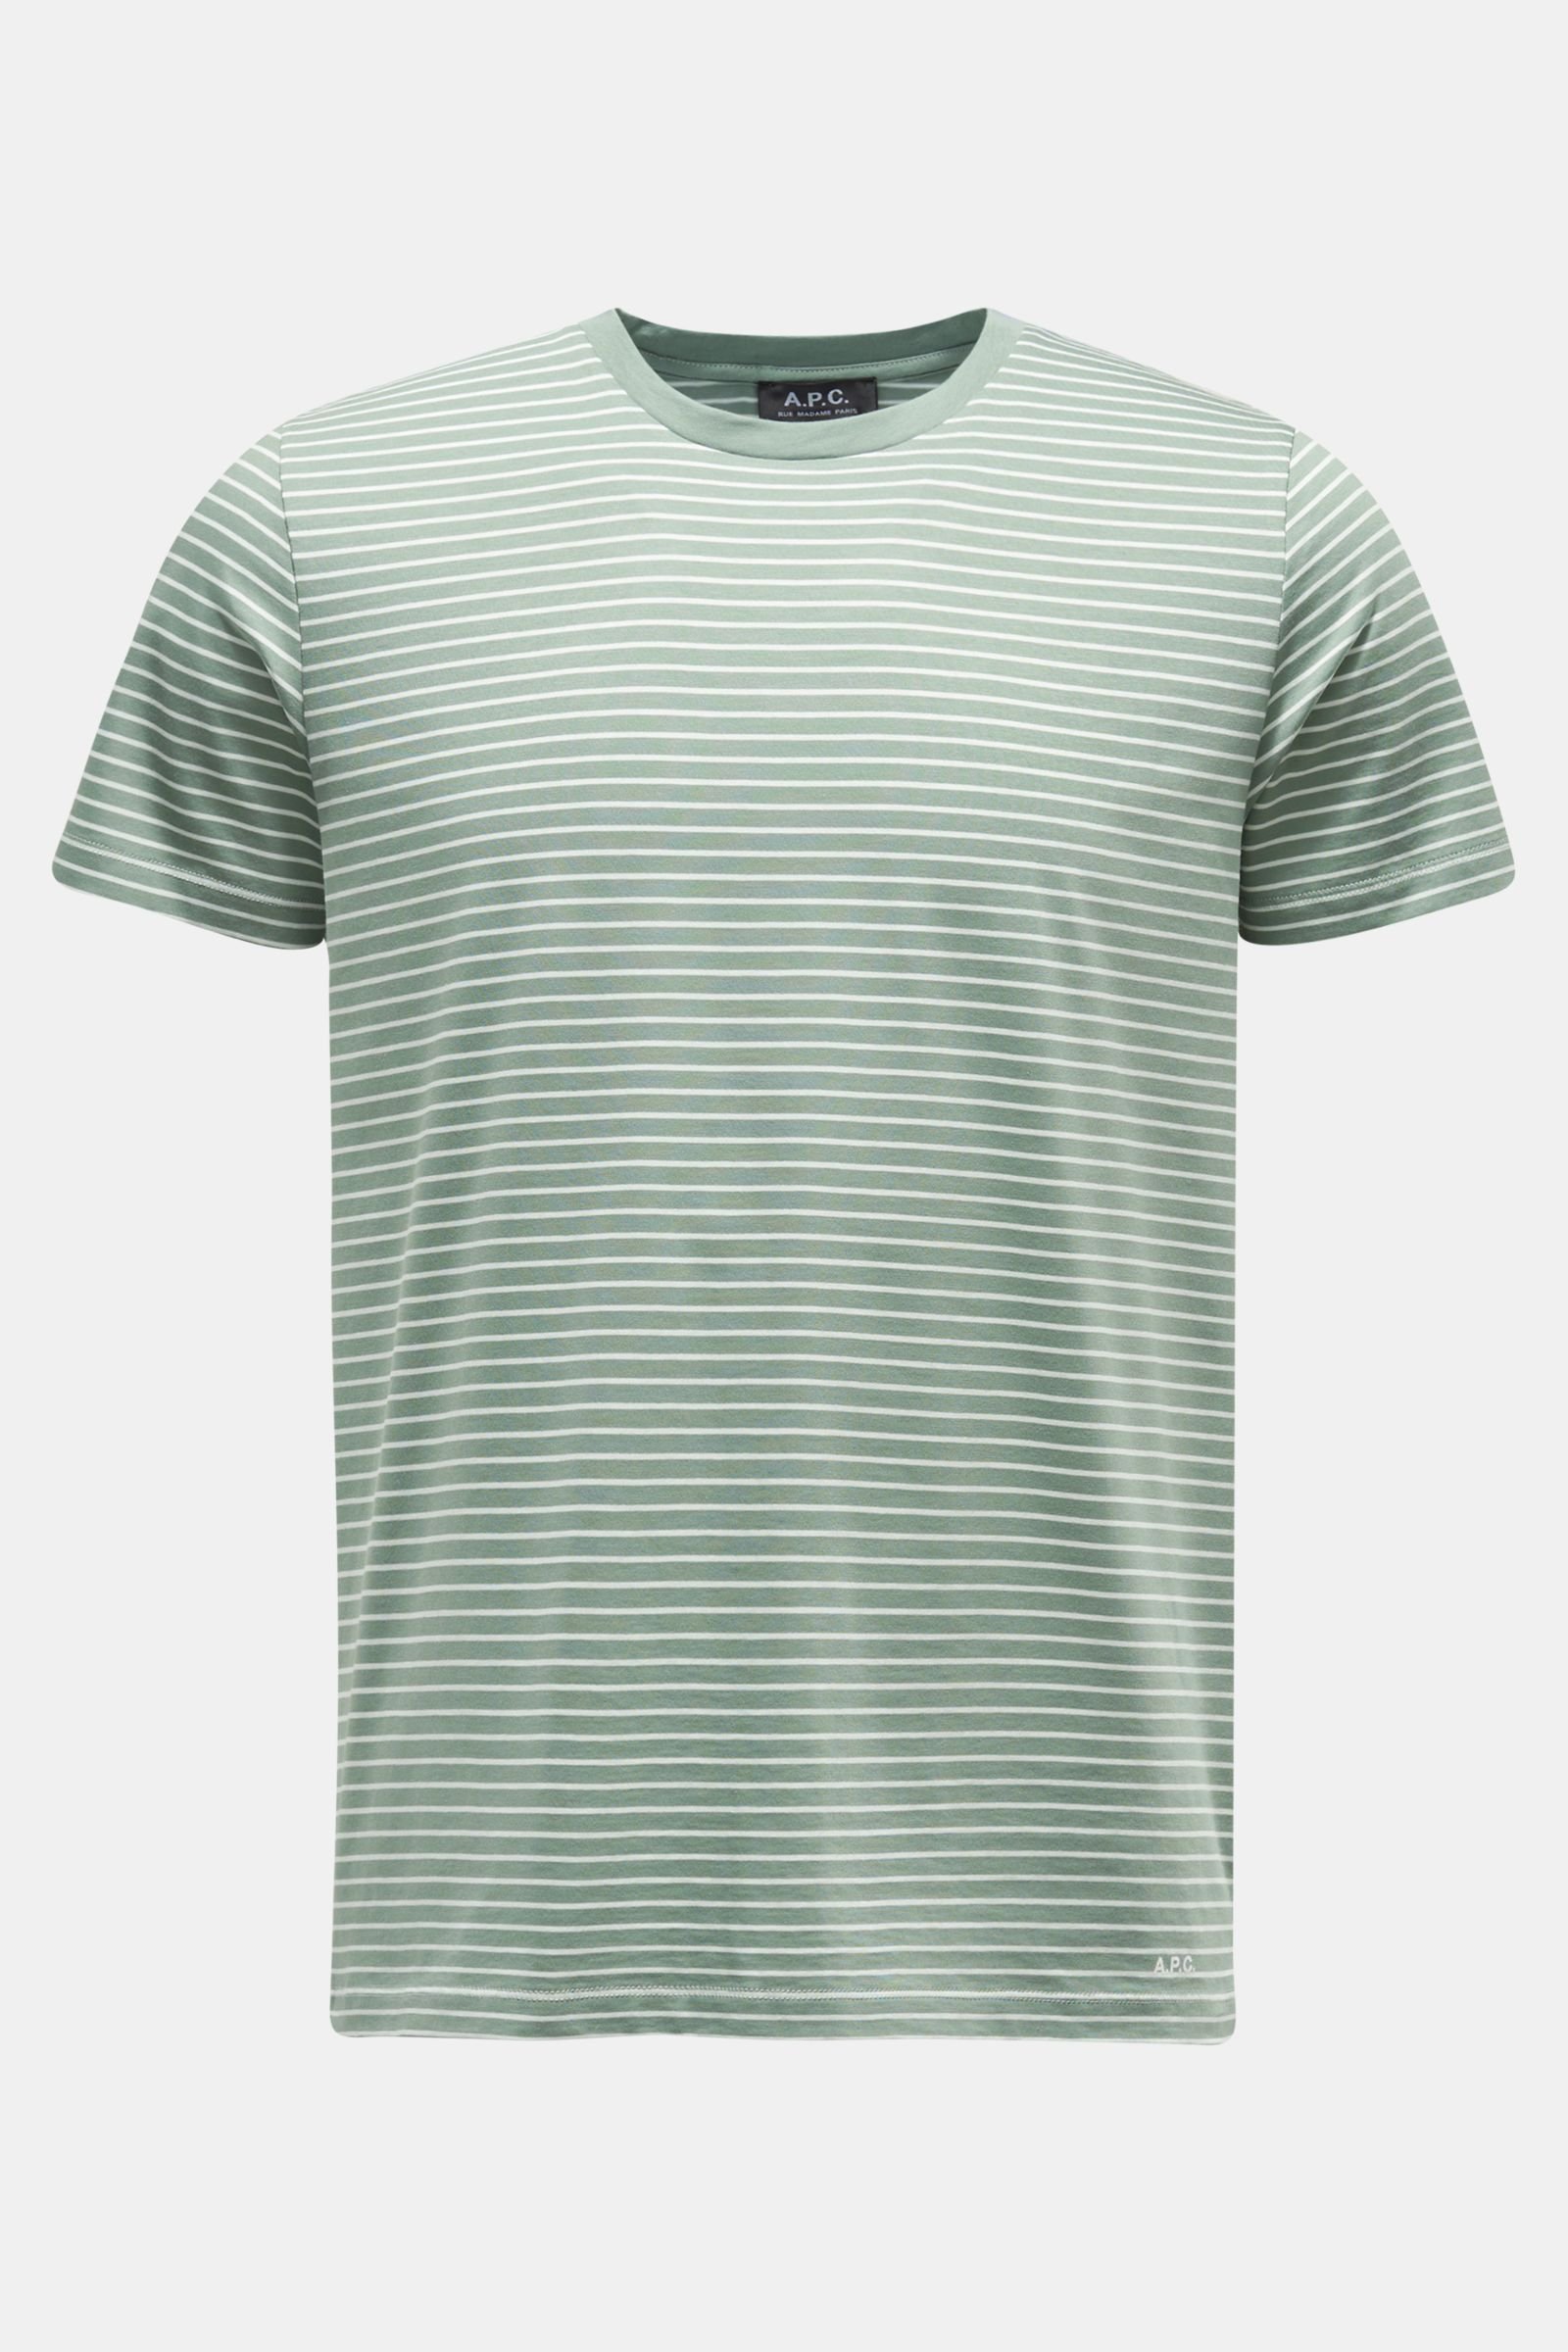 Crew neck T-shirt 'Aurelien' grey-green/white striped